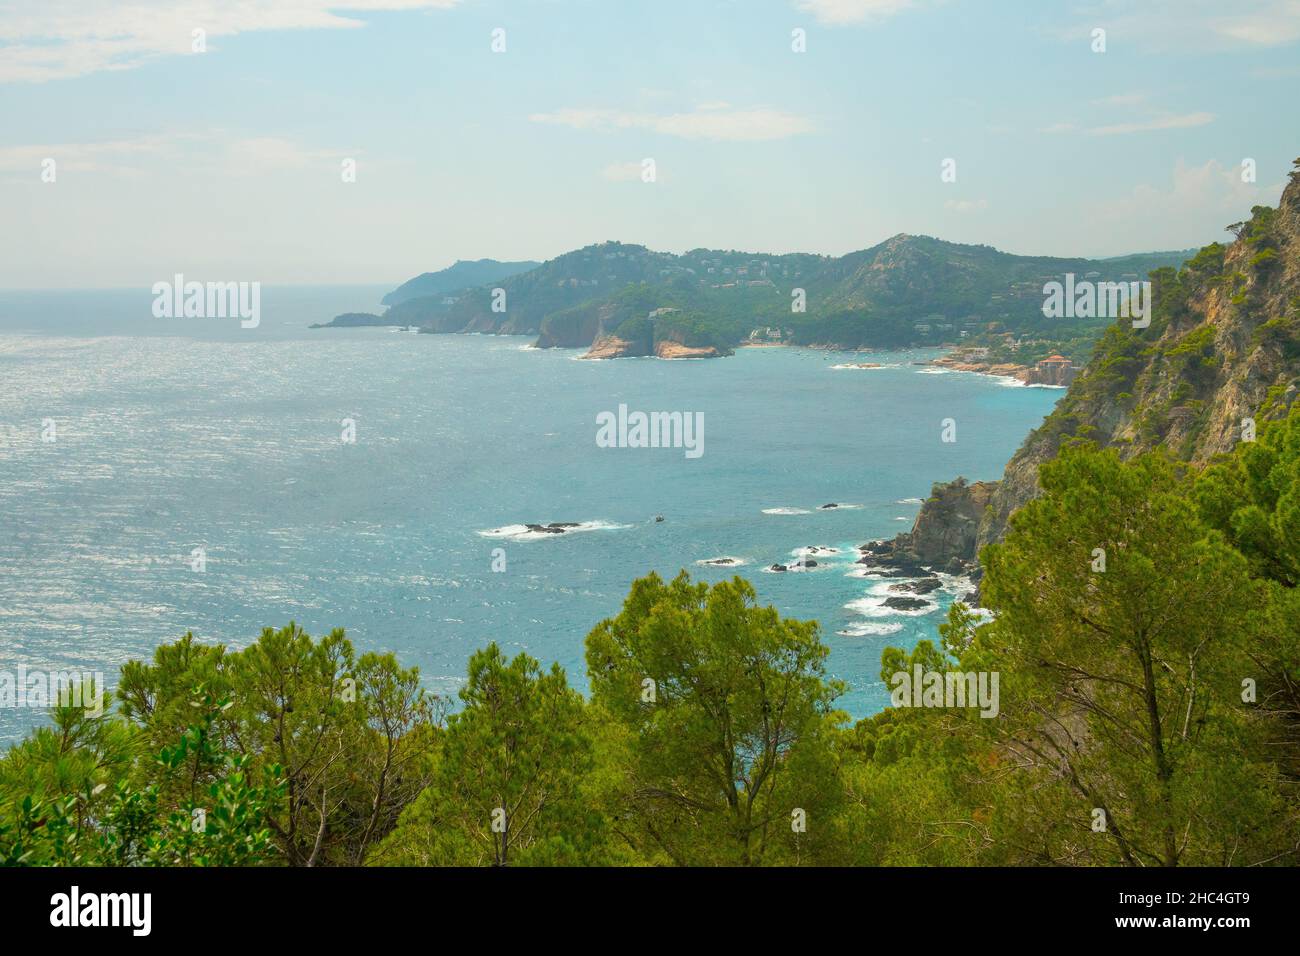 Vue sur la magnifique côte colorée avec des falaises, des montagnes et de l'eau bleu cristal Banque D'Images